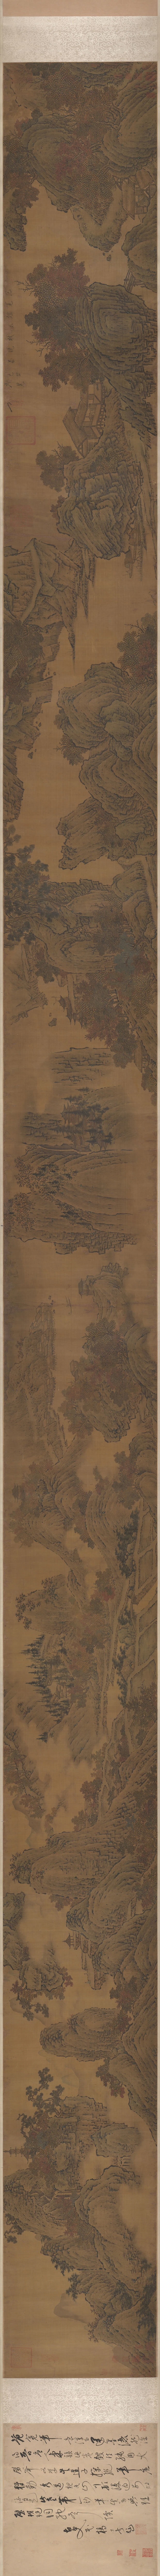 北宋 范宽 《烟岚秋晓图》卷，绢本设色，40x603.3cm，大都会艺术博物馆藏。